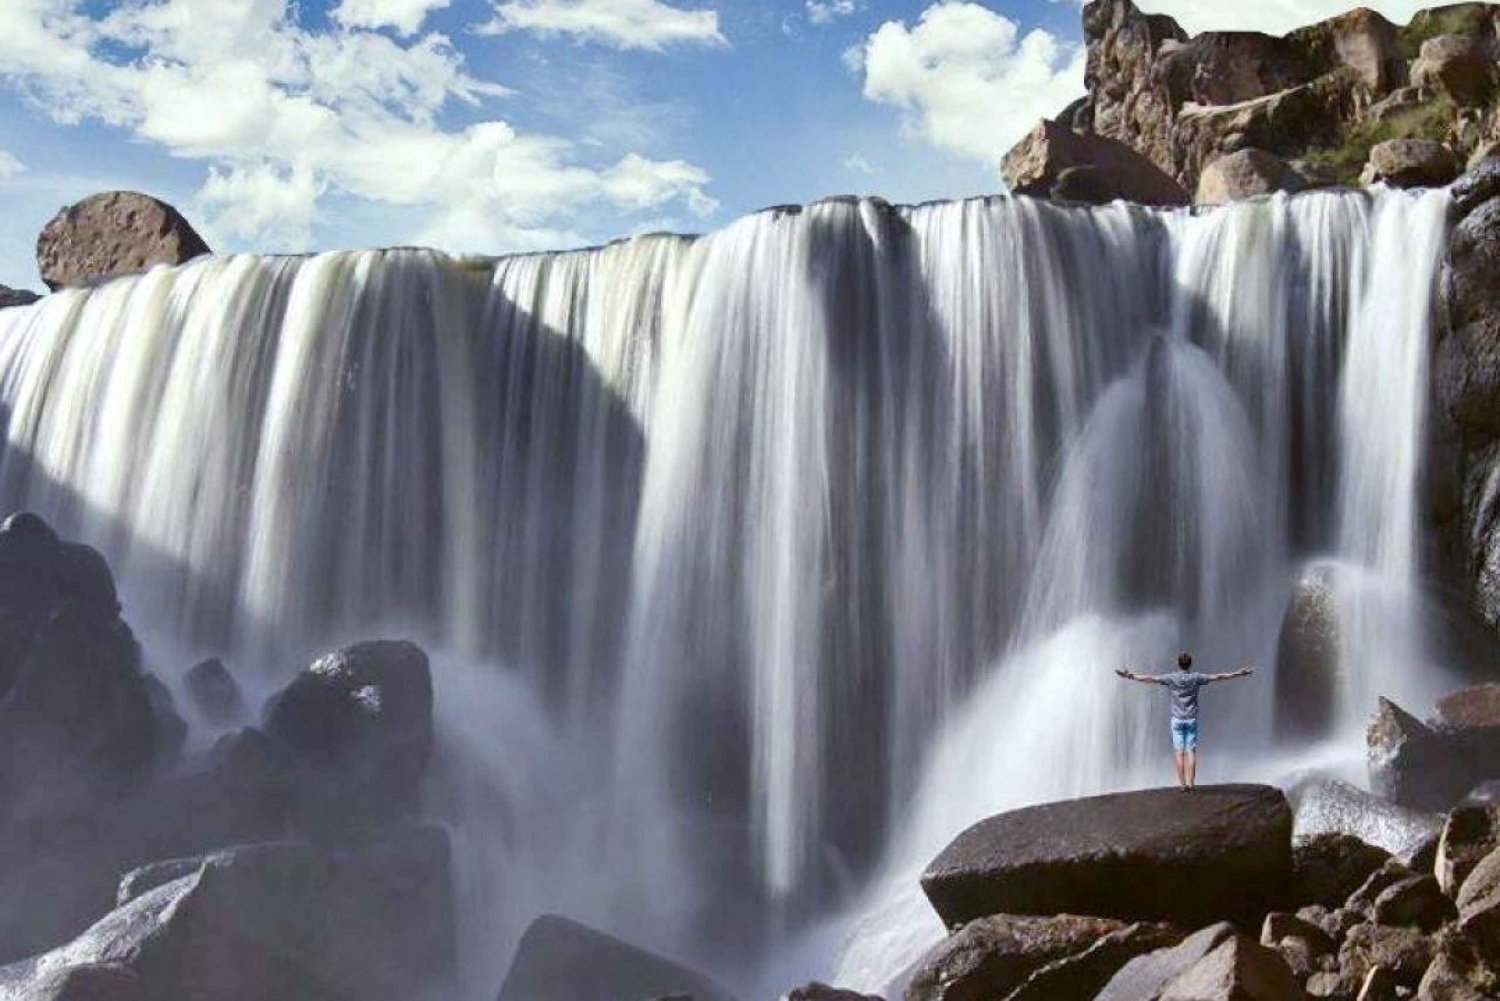 Depuis Arequipa : Excursion aux cascades de Pillones || Journée entière||